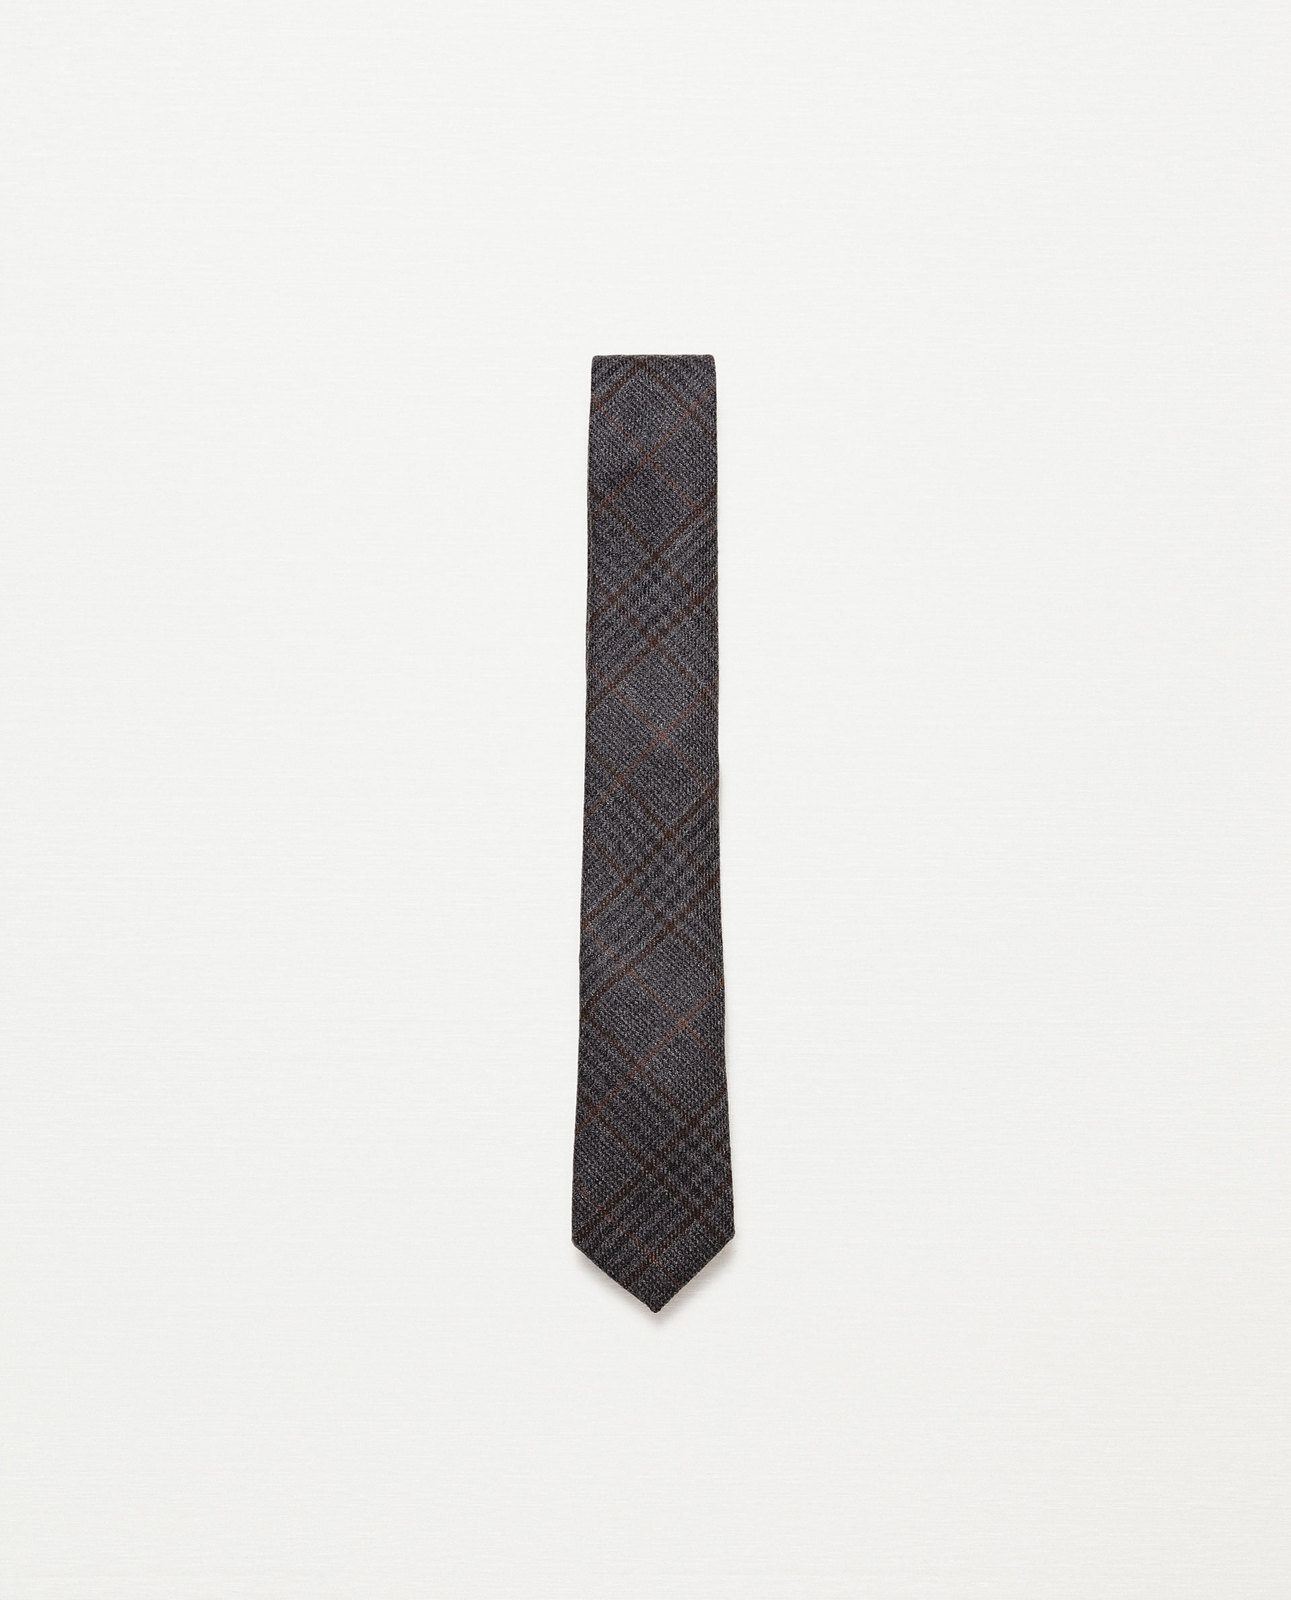 Zara divatos férfi kockás nyakkendő fotója